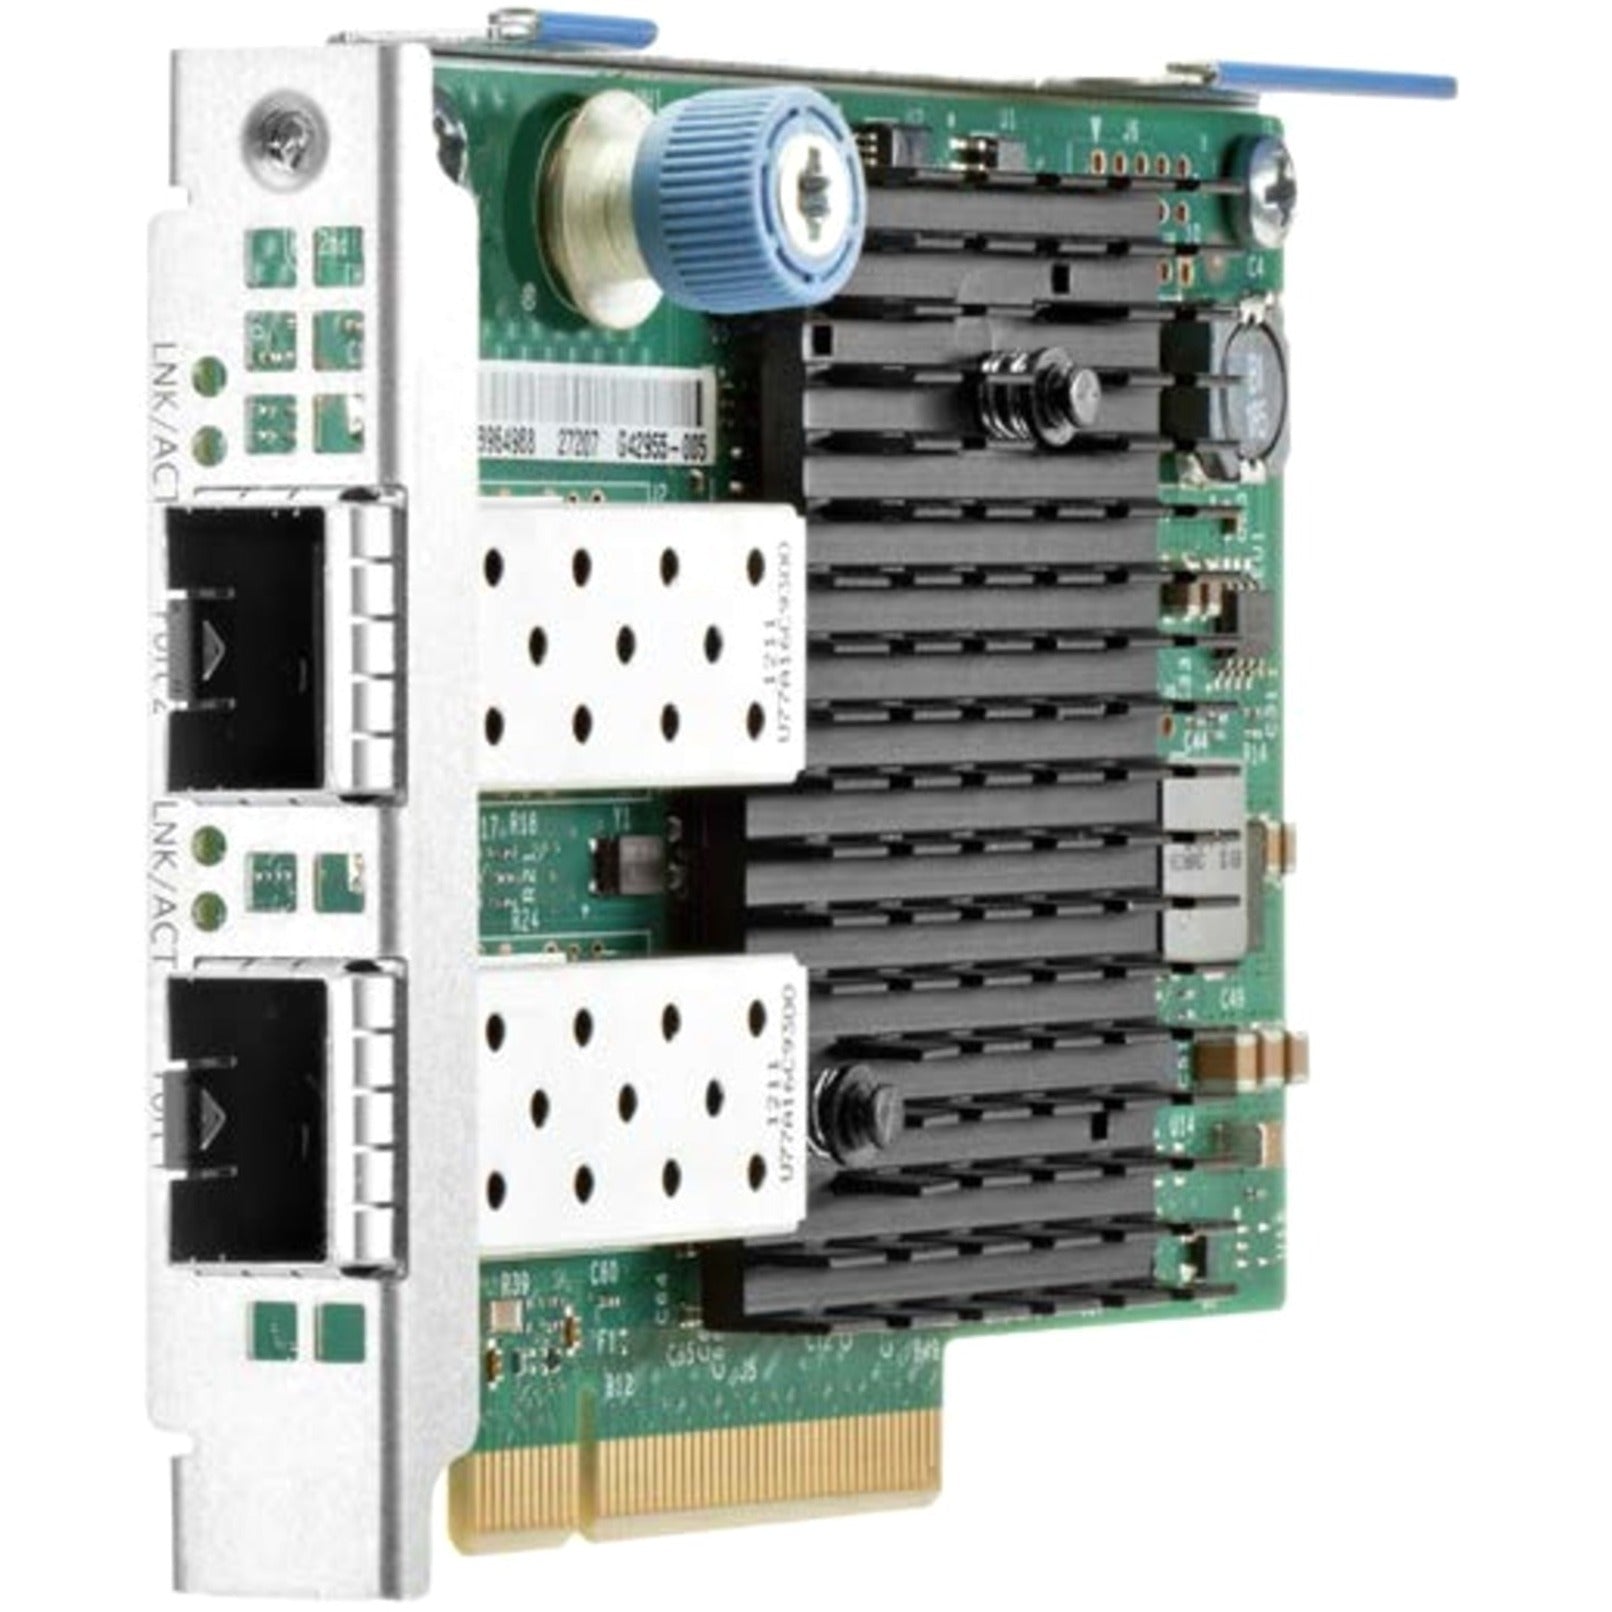 品牌: 惠普 (HPE) 光纤 (Optical Fiber) PCI Express 3.0 x8 (PCI Express 3.0 x8) 以太网 (Ethernet) 10Gb (10Gb) 2端口 (2-port) 727054-B21 (727054-B21) 562FLR-SFP+ 适配器 (562FLR-SFP+ Adapter)